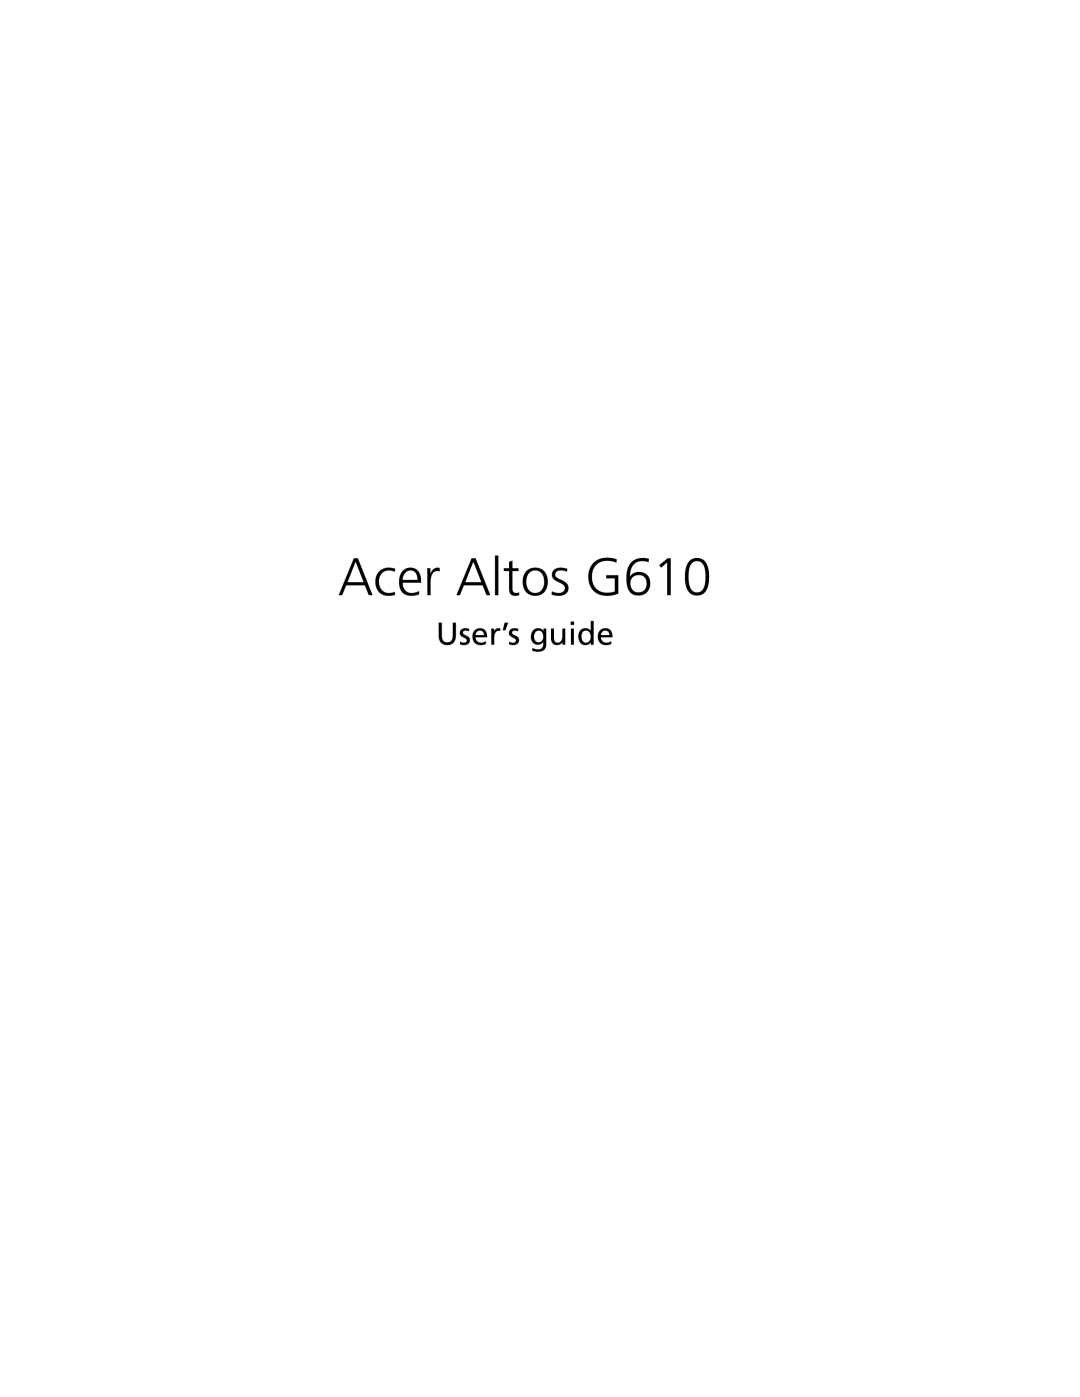 Acer manual Acer Altos G610, User’s guide 